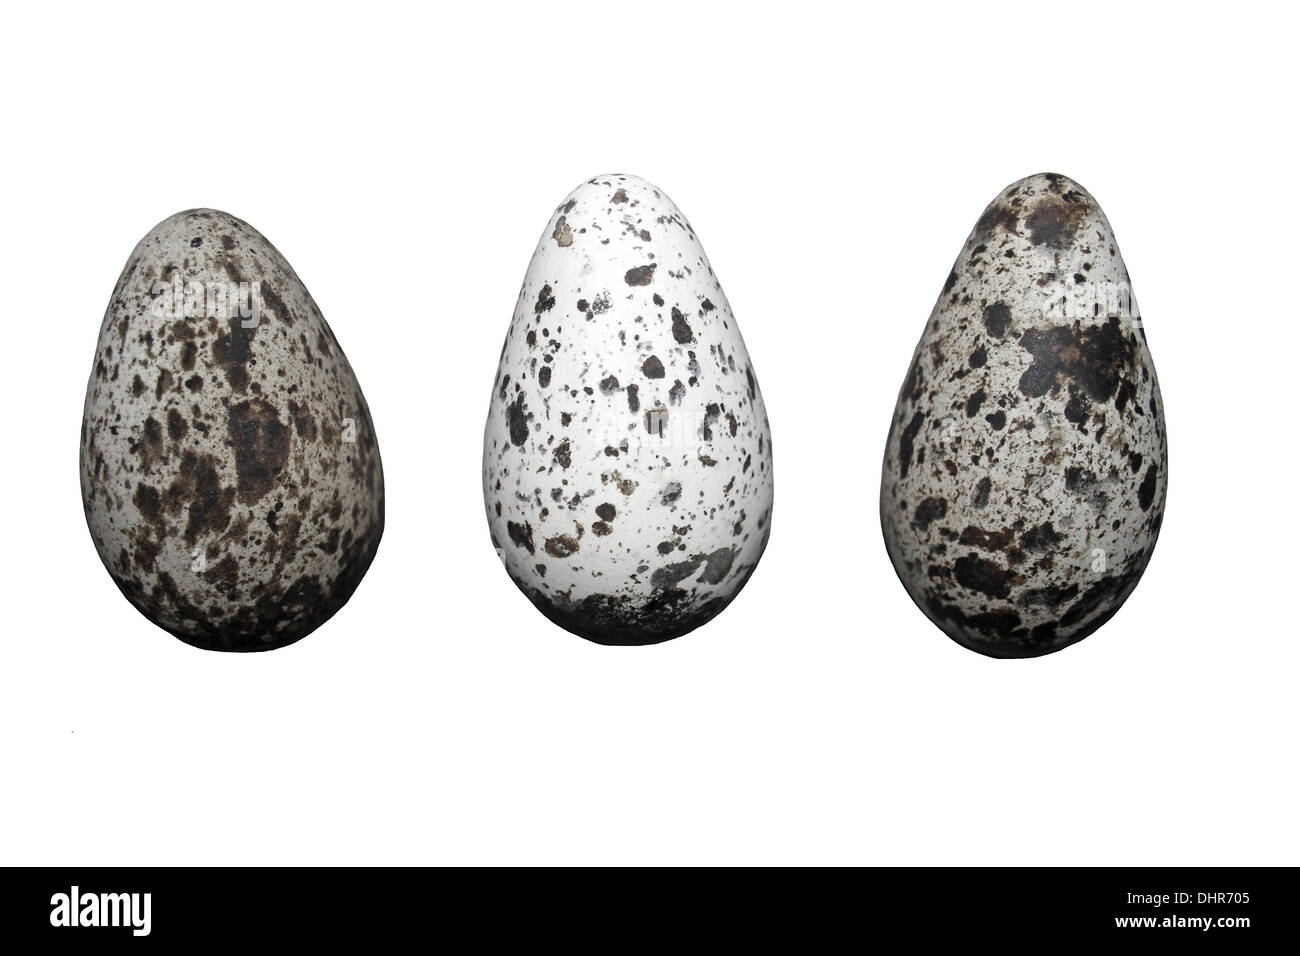 Drei gemeinsame Guillemot Uria Aalge Eiern zeigt Variation In Musterung Stockfoto